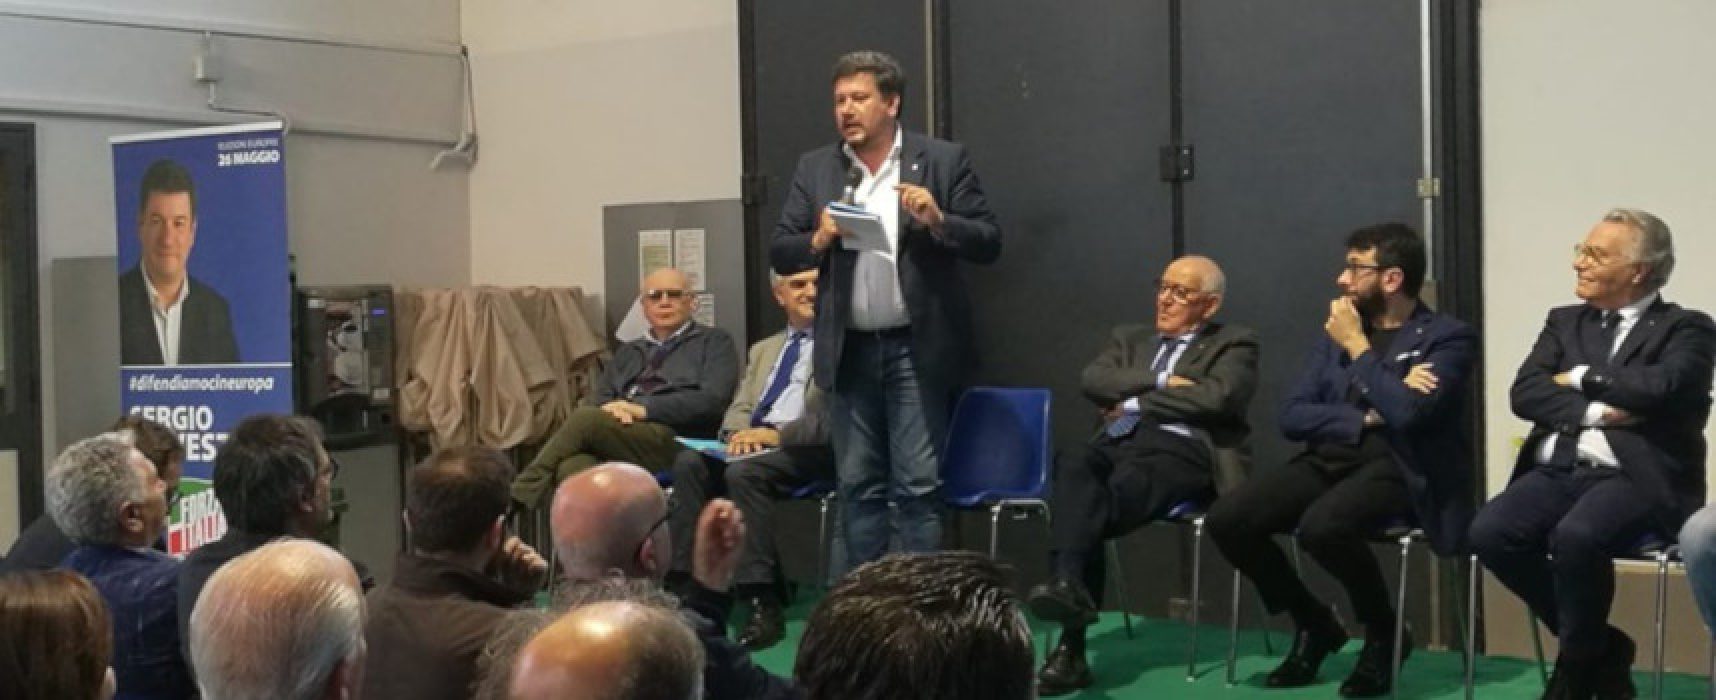 Silvestris promette il suo impegno in Europa a tutela dell’agricoltura locale